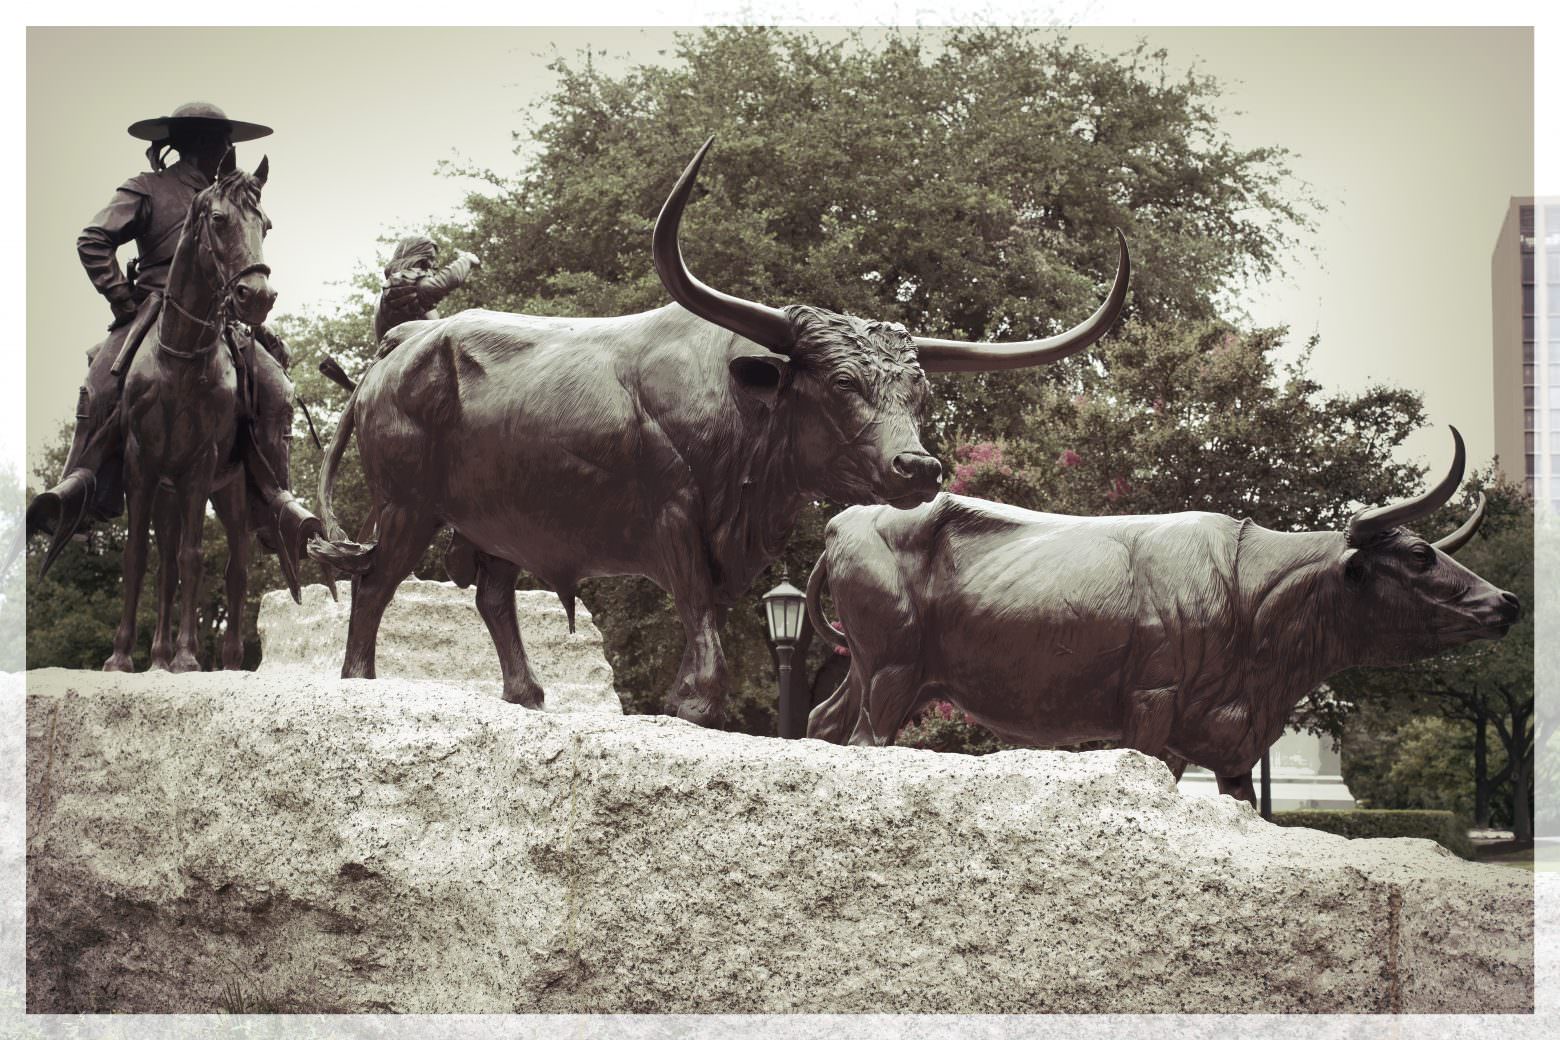 Texas Capitol Grounds Bulls